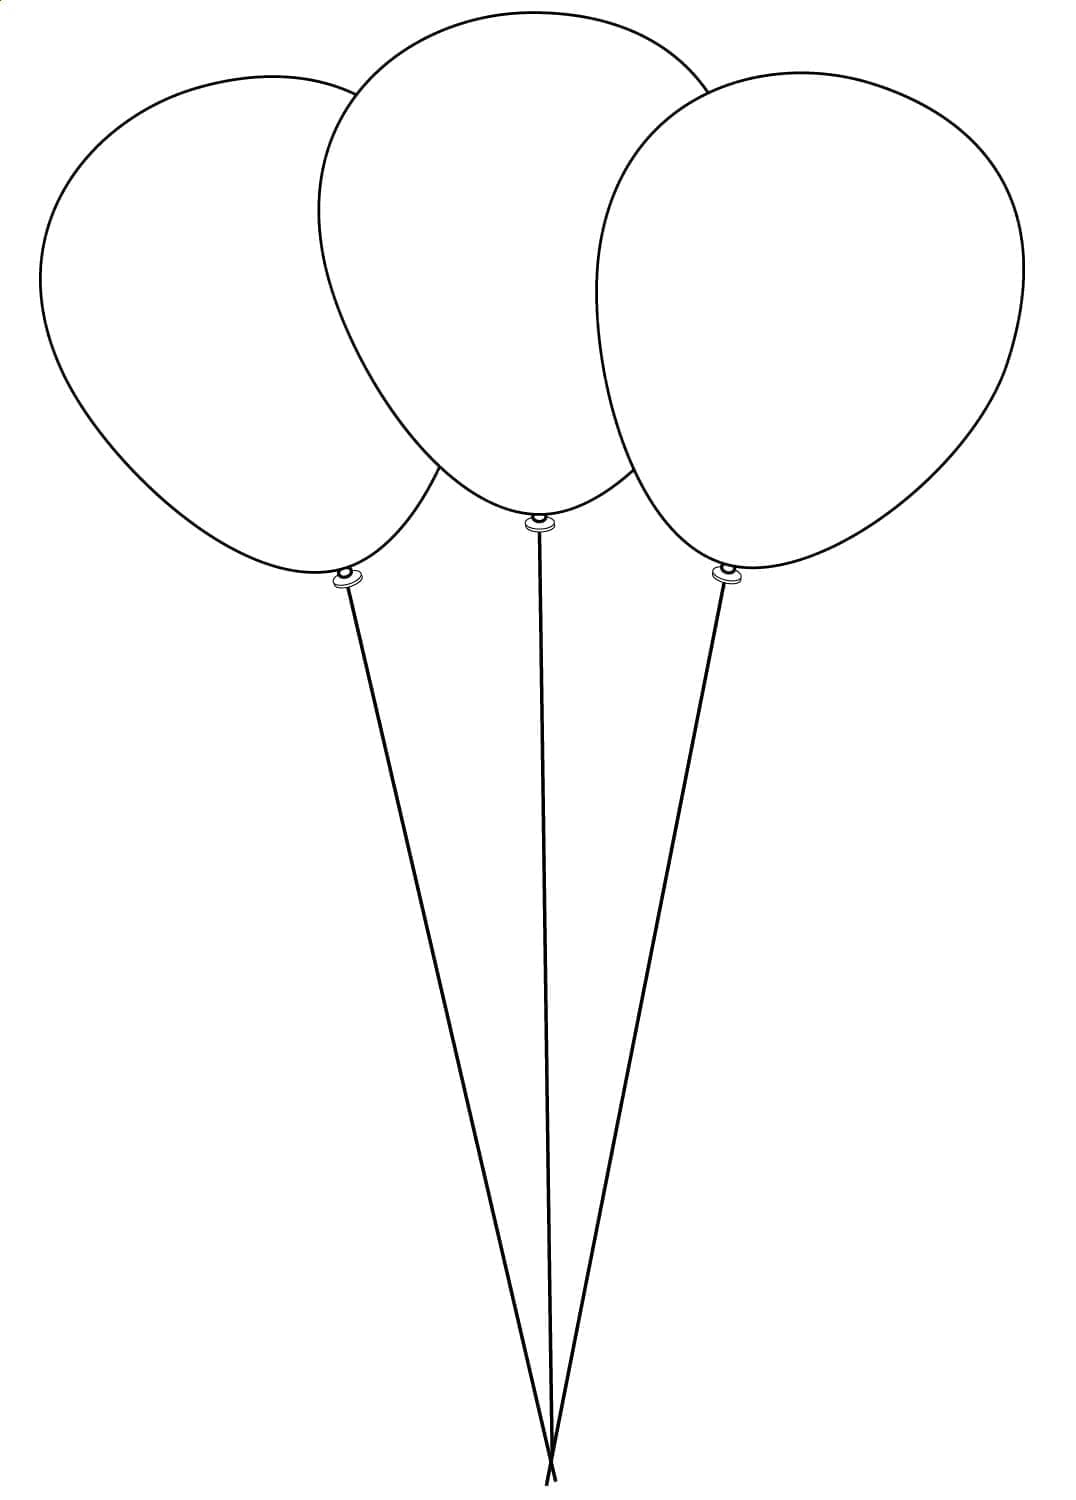 Trei baloane perfecte